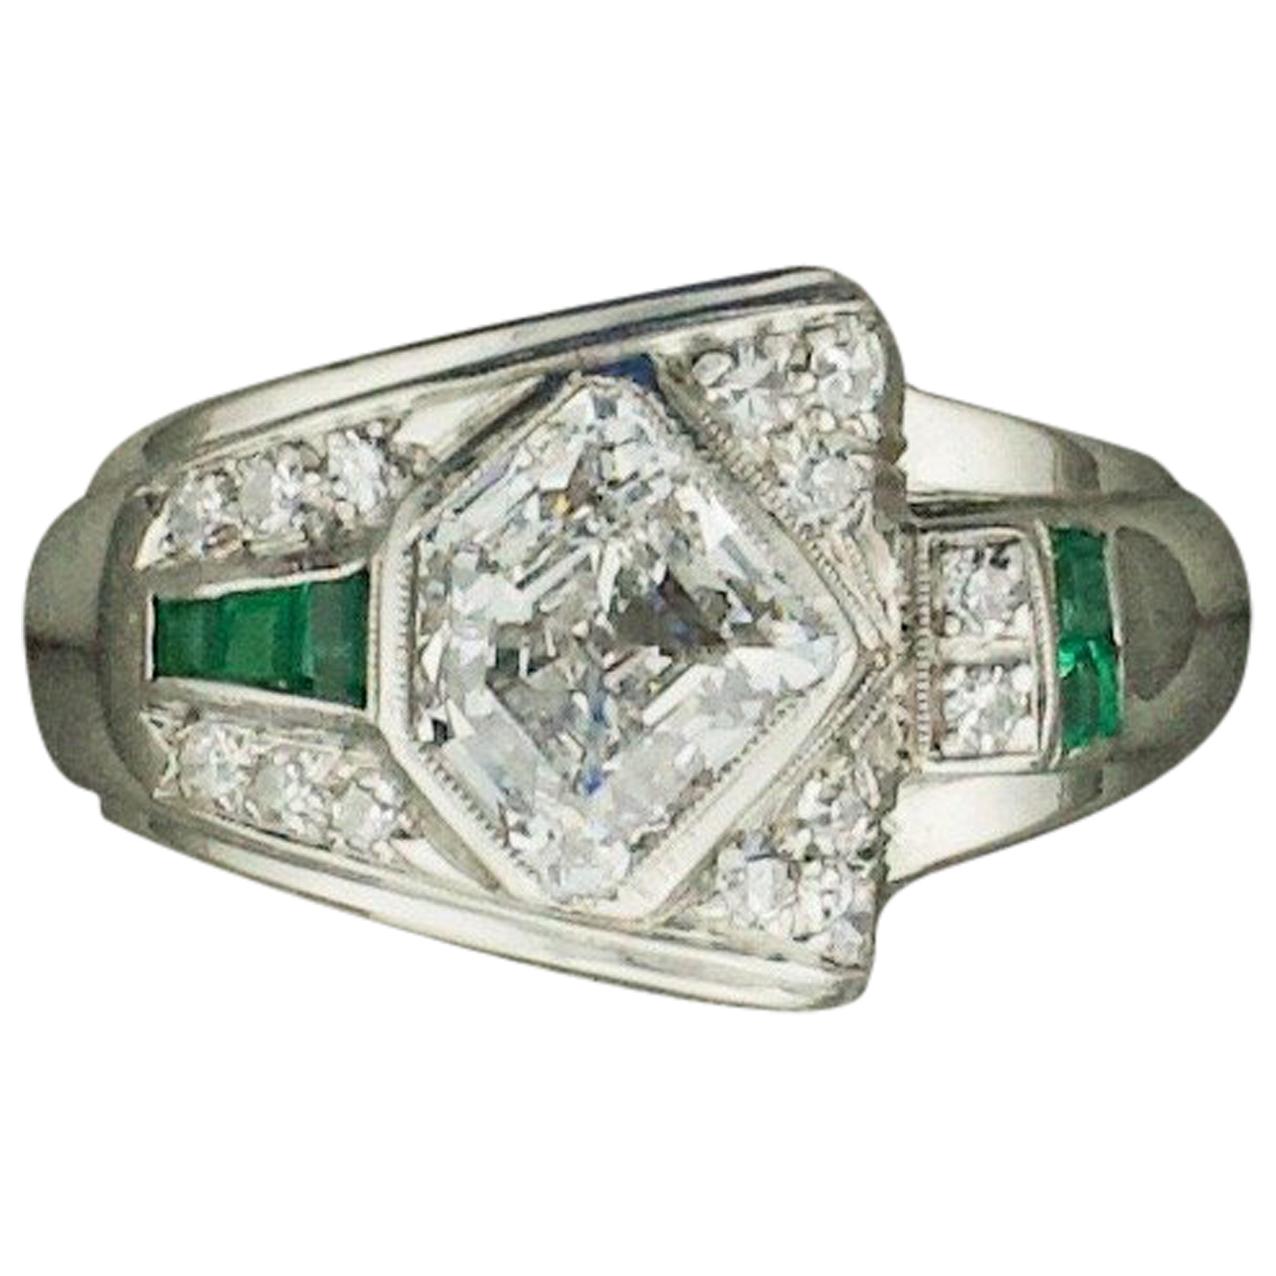 Rare 1940s Diamond and Emerald Ring in Palladium 1.83 E - VS1 Shield Cut For Sale